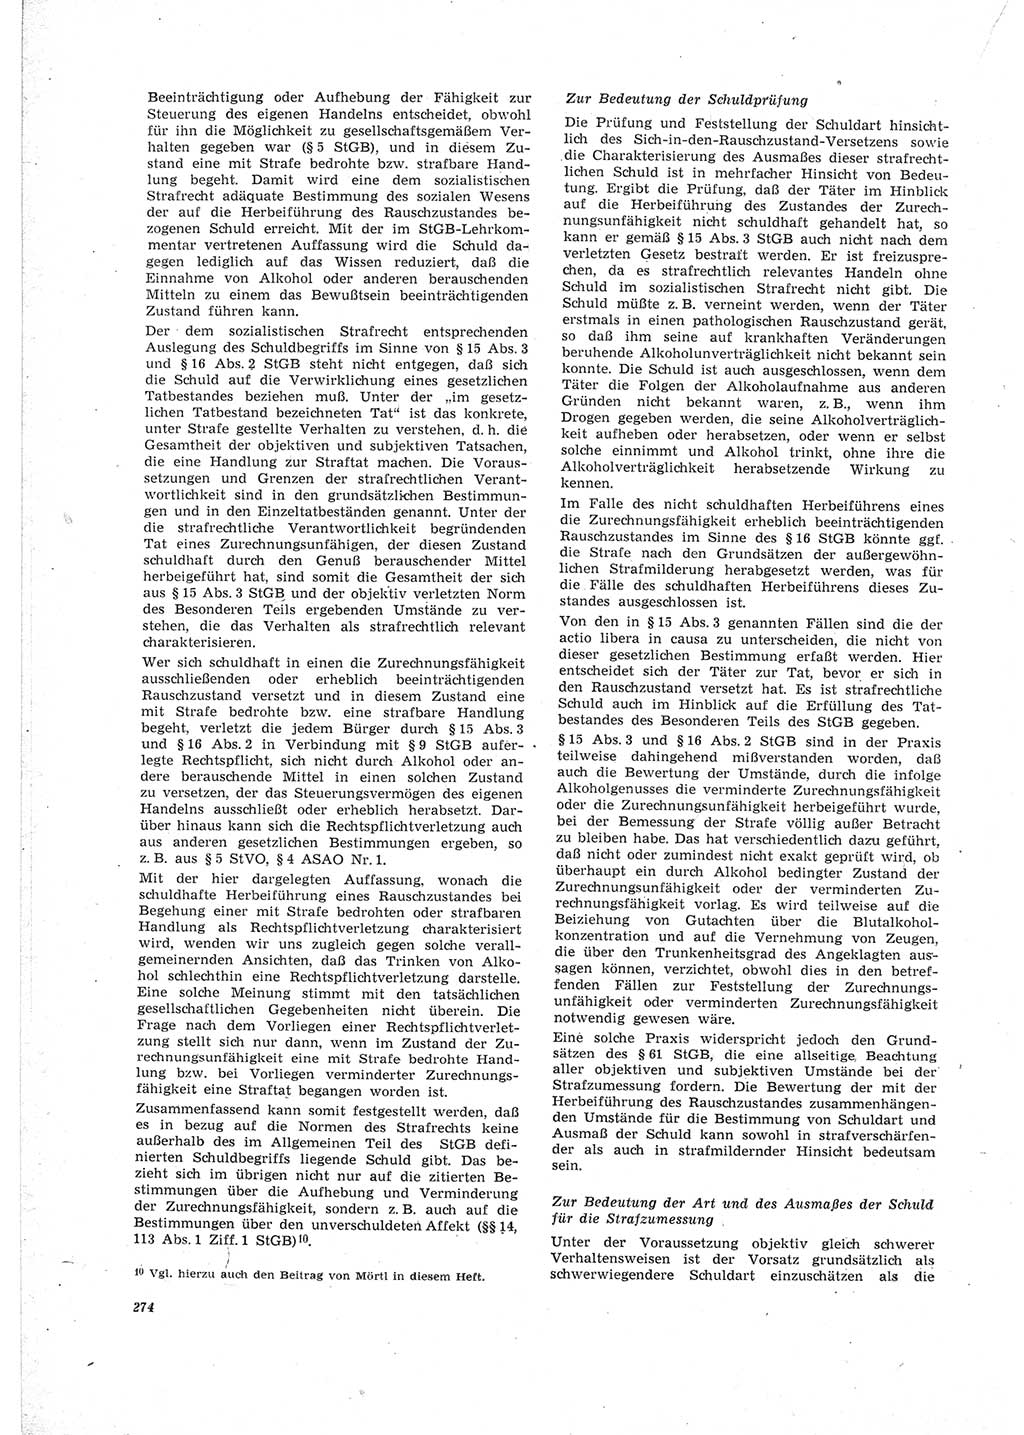 Neue Justiz (NJ), Zeitschrift für Recht und Rechtswissenschaft [Deutsche Demokratische Republik (DDR)], 23. Jahrgang 1969, Seite 274 (NJ DDR 1969, S. 274)